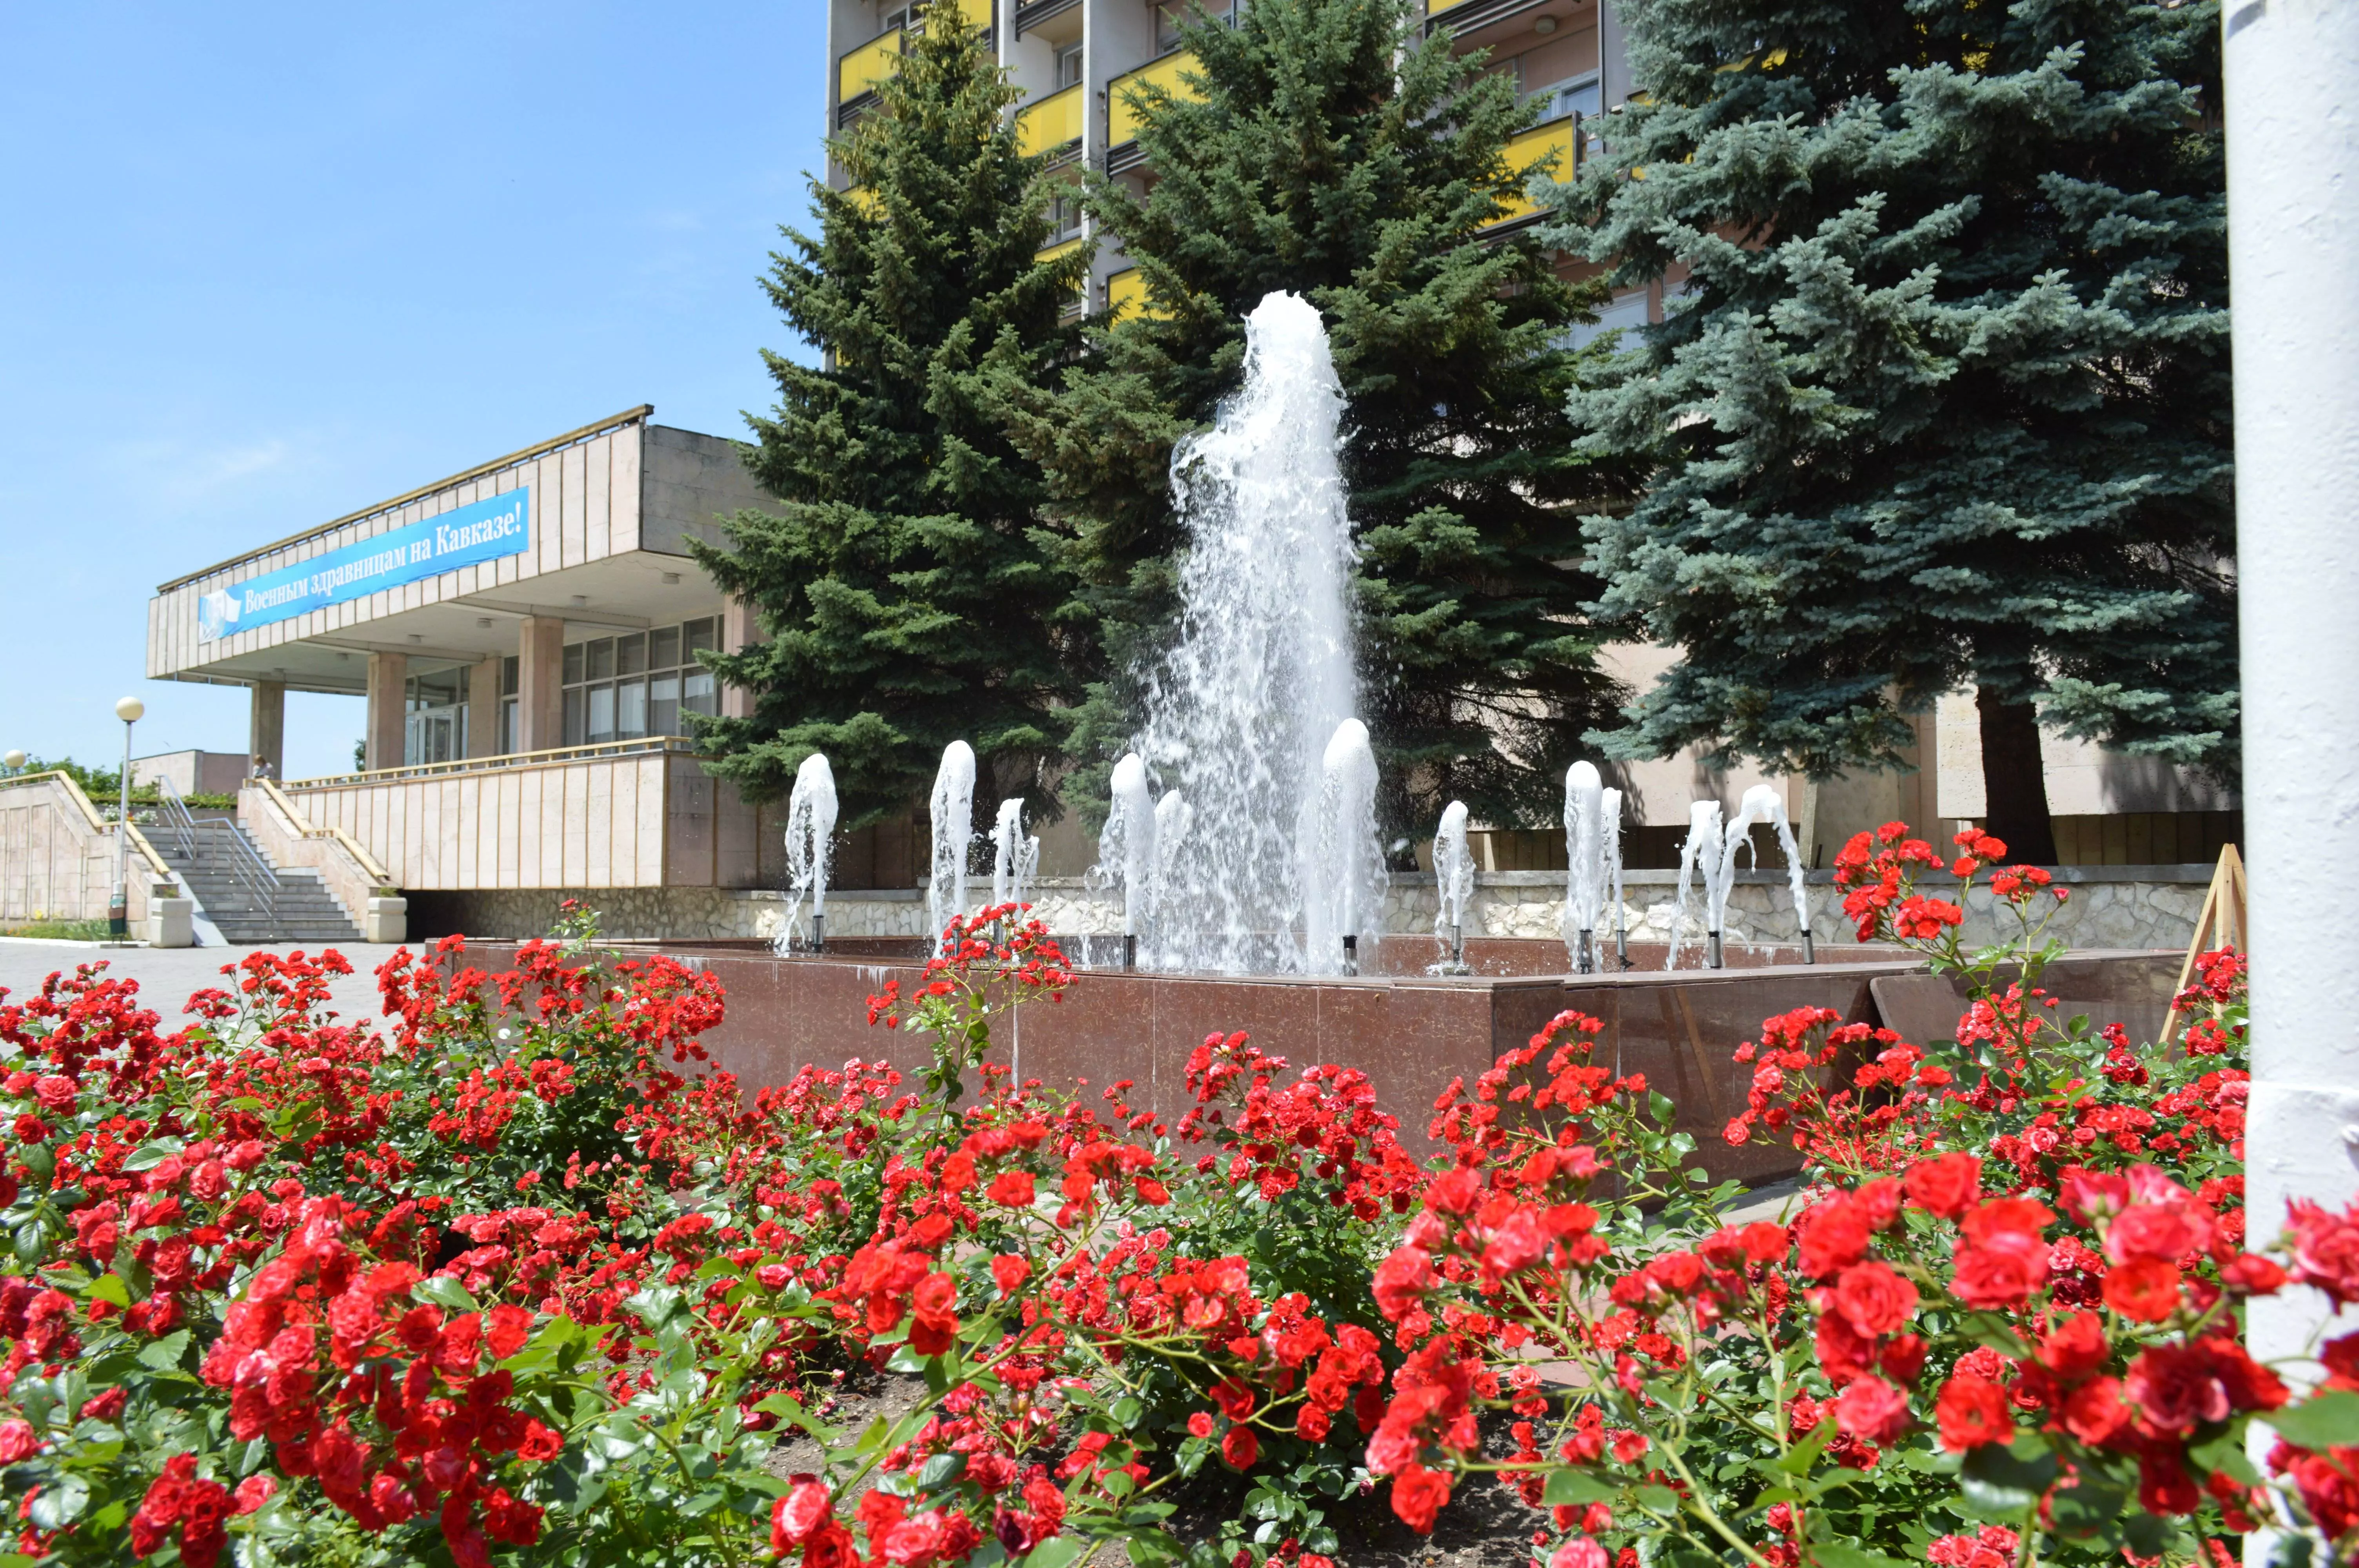 Пятигорск — отдых, экскурсии, музеи, кухня и шоппинг, достопримечательности пятигорска